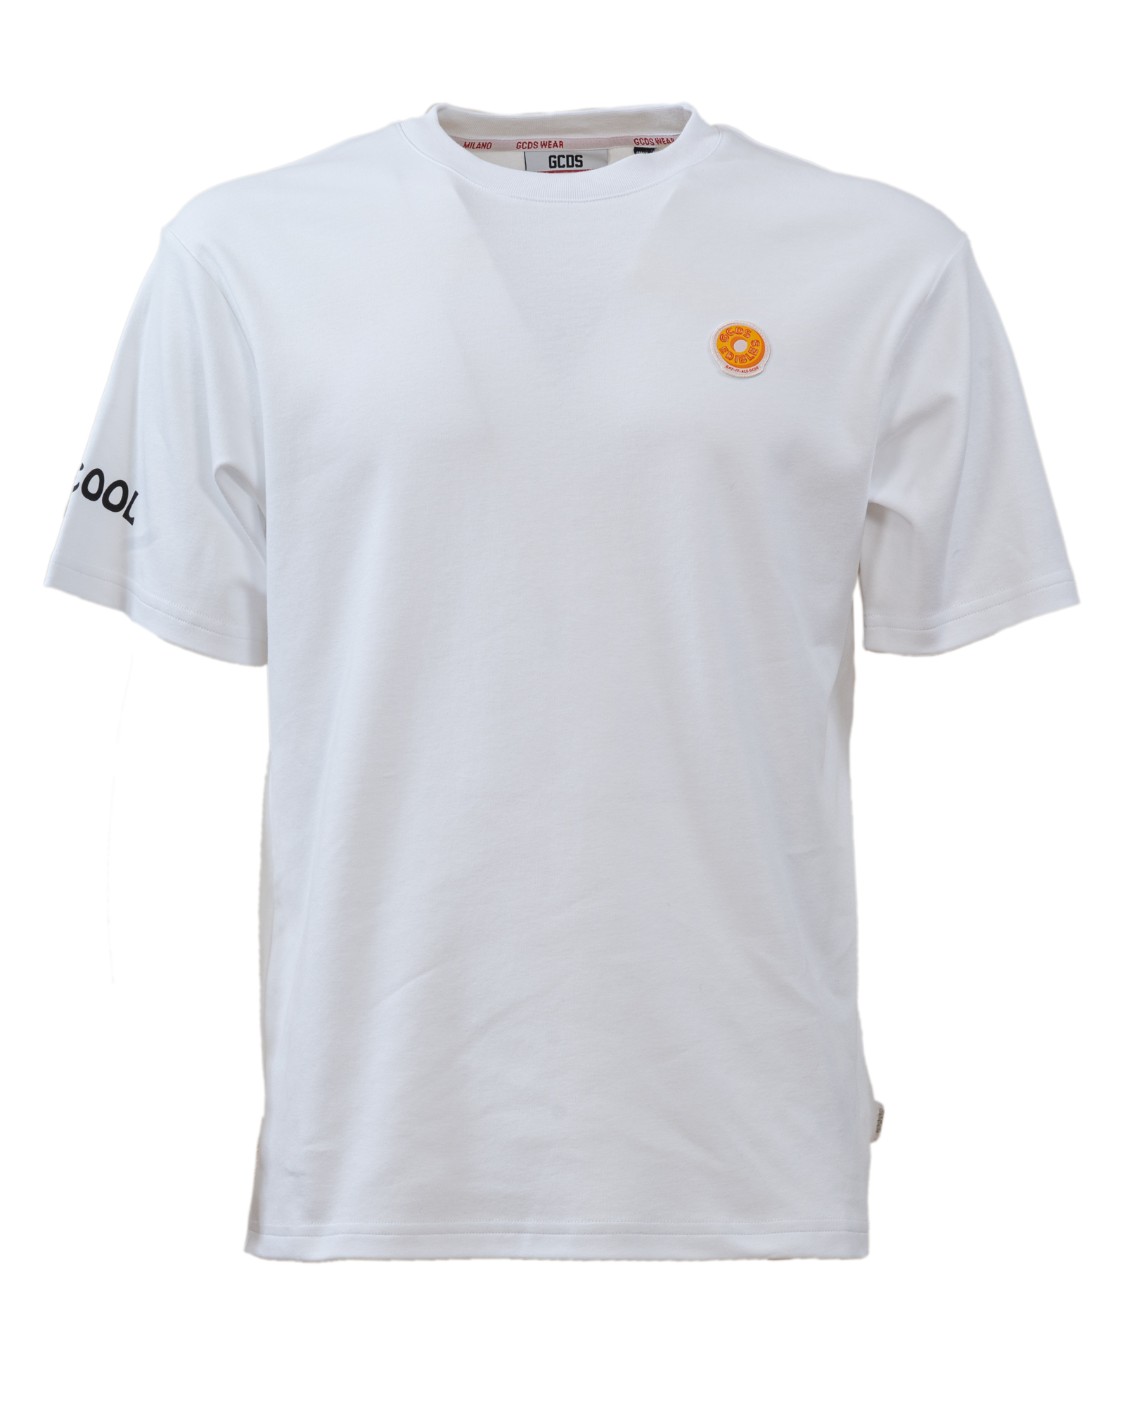 shop GCDS Saldi T-shirt: GCDS t-shirt bianca.
Girocollo.
Maniche corte.
Stampa sul retro.
Vestibilità regolare.
Composizione: 100% cotone.
Made in Italy.. FW22M020054-01 number 4477422